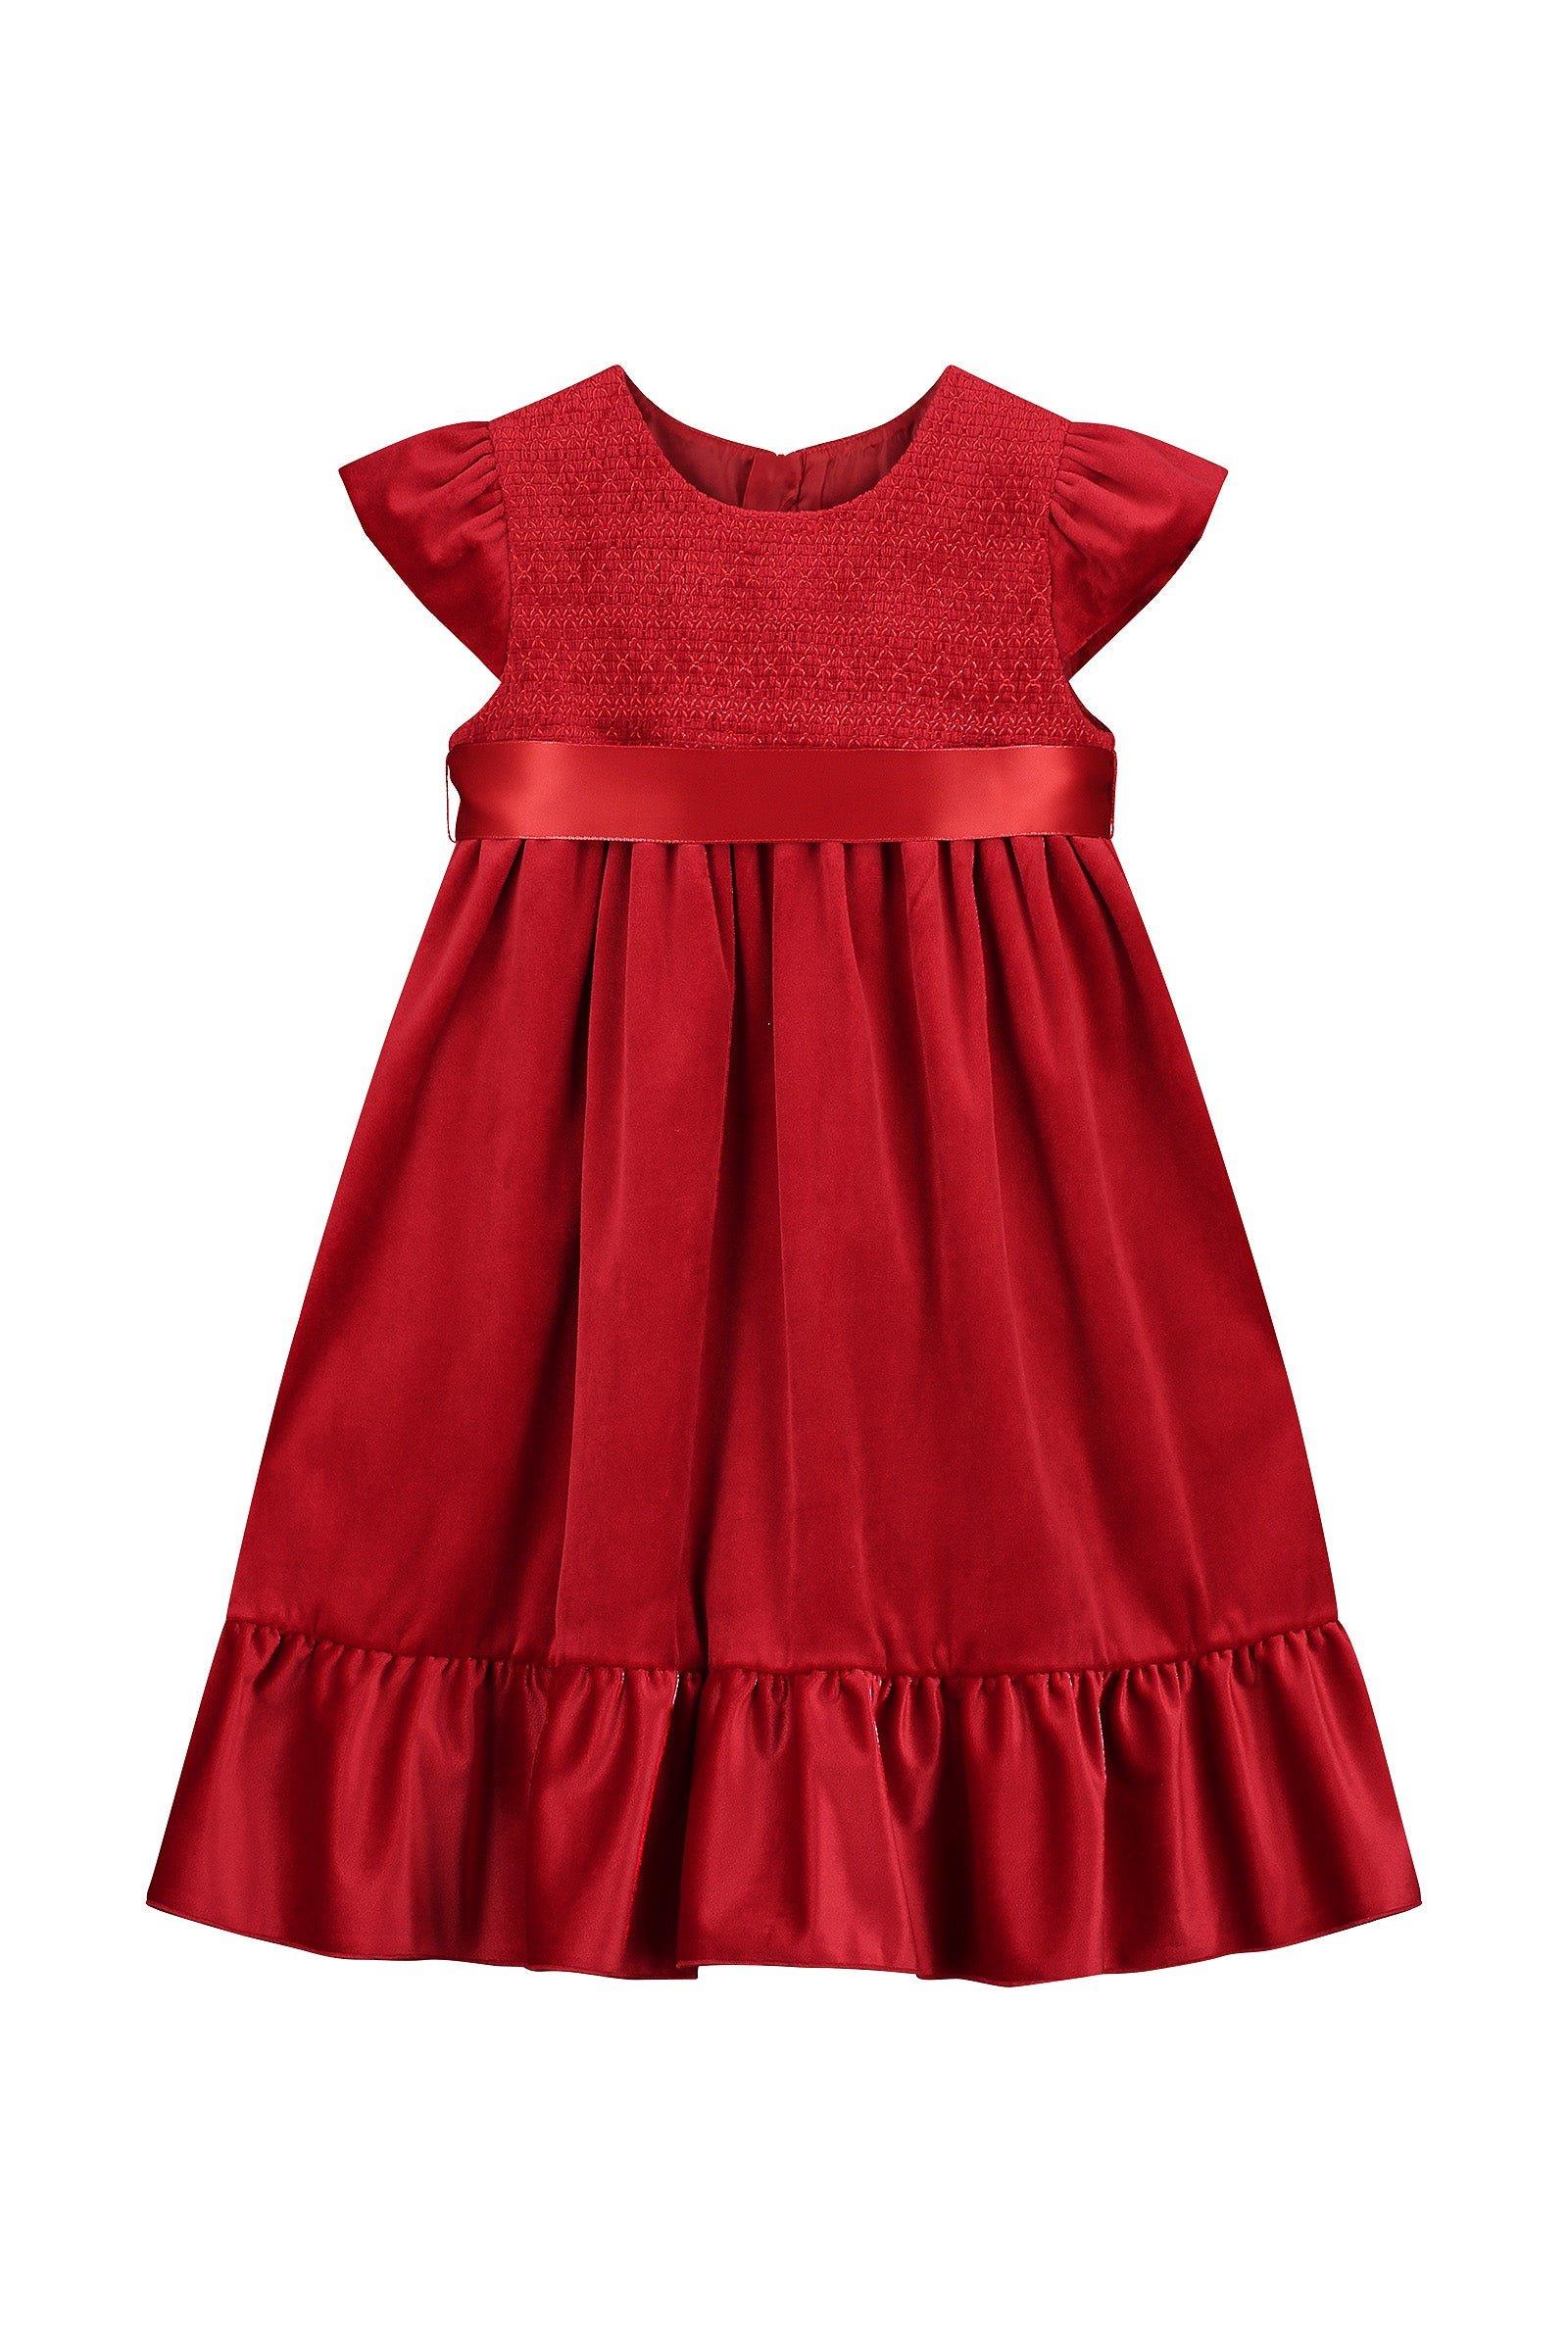 Вечернее платье Poppy со сборками HOLLY HASTIE, красный платье eleni viare бархатное с вышивкой 50 размер новое